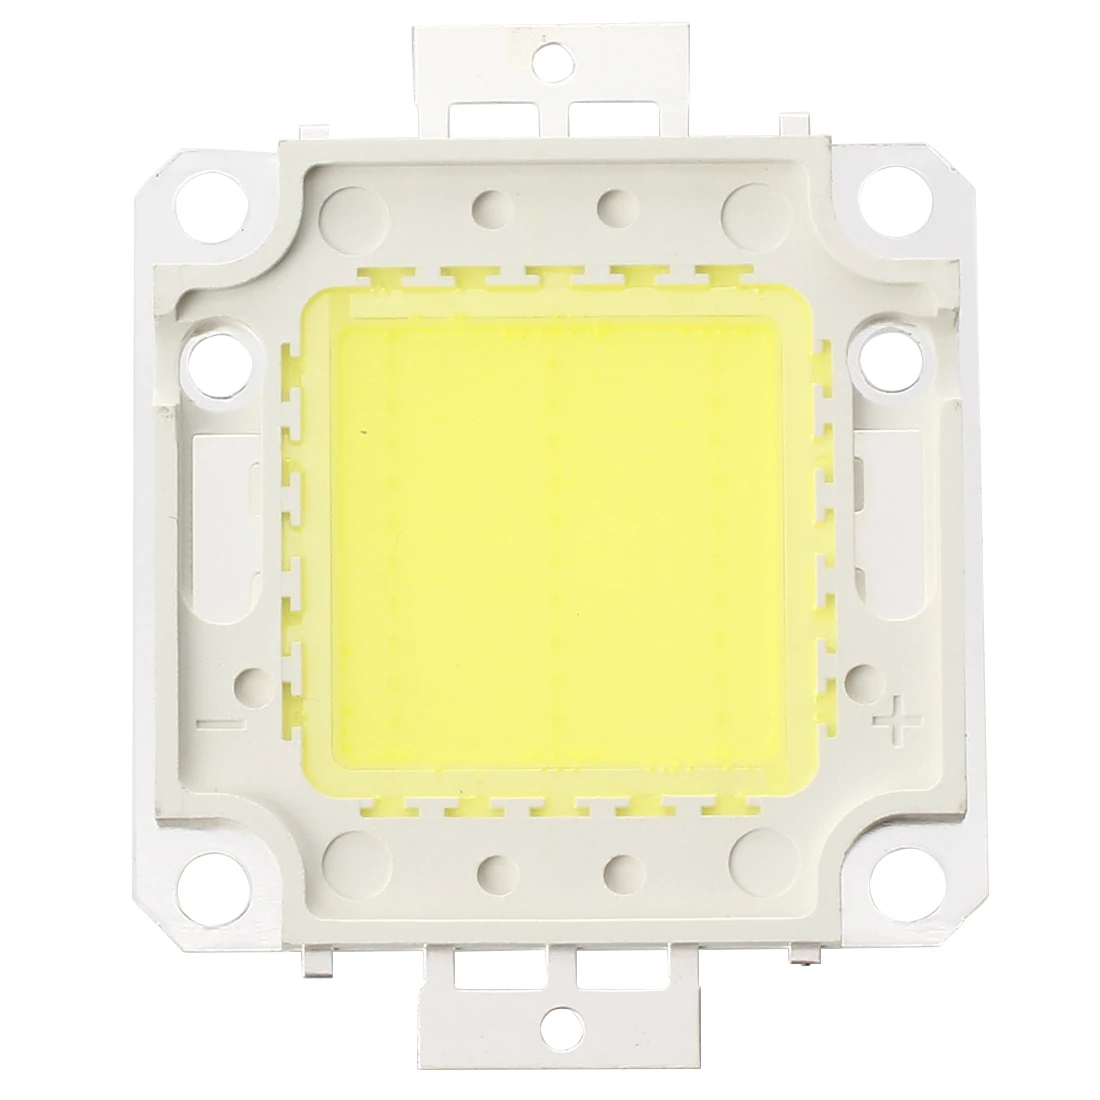 

High Power 30W LED Chip Bulb Light Lamp DIY White 2200lm 6500K